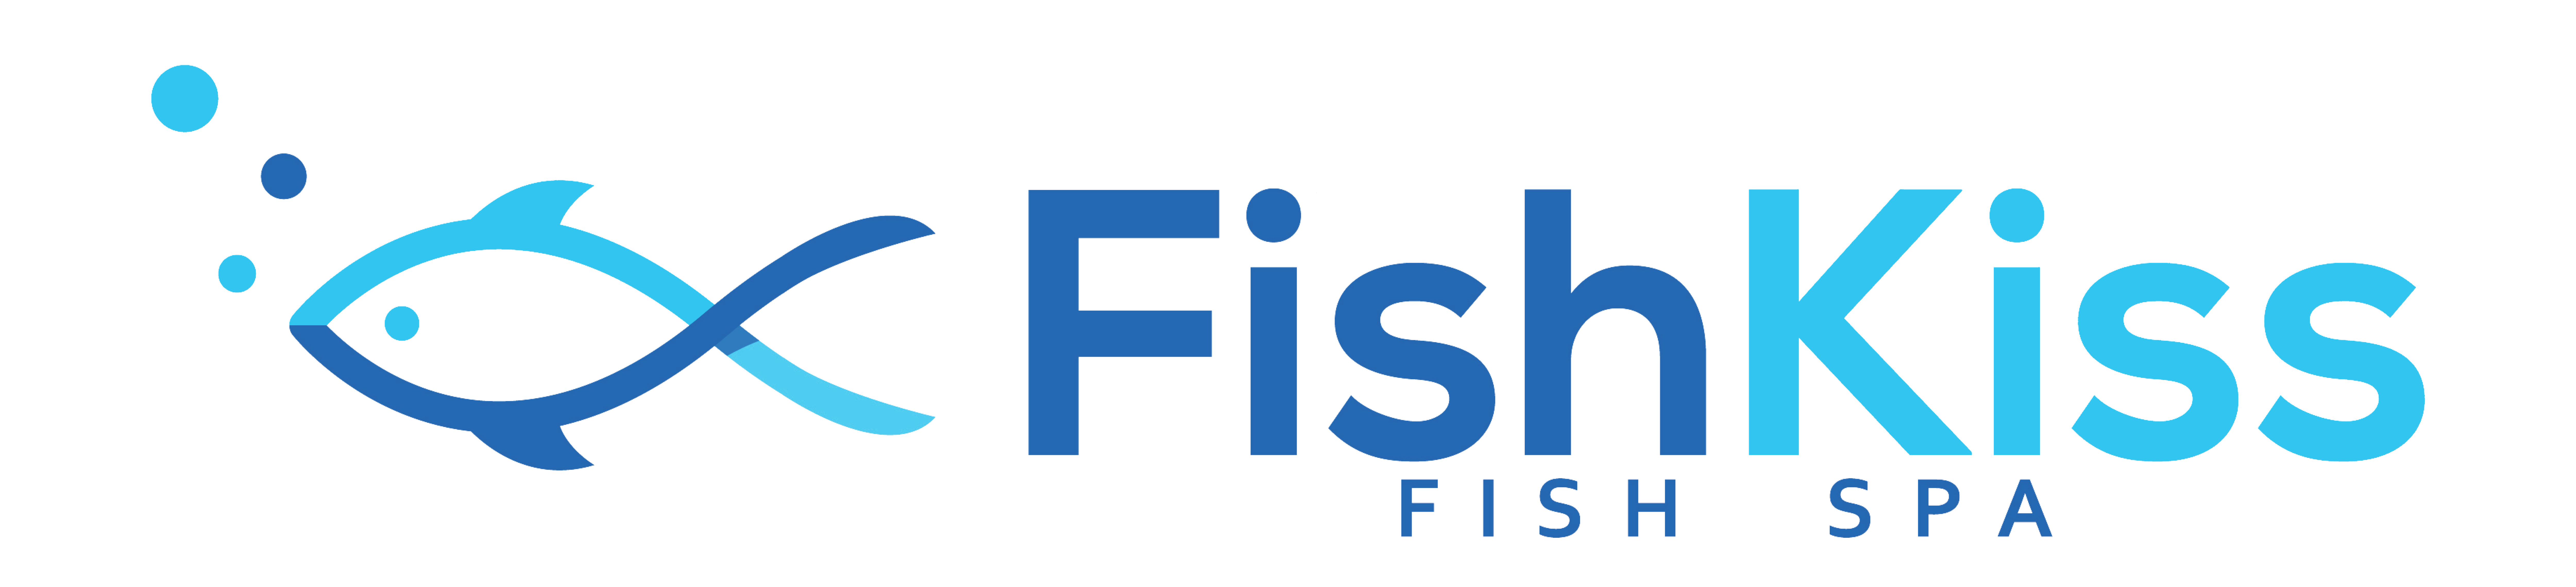 FishKiss Fish Spa